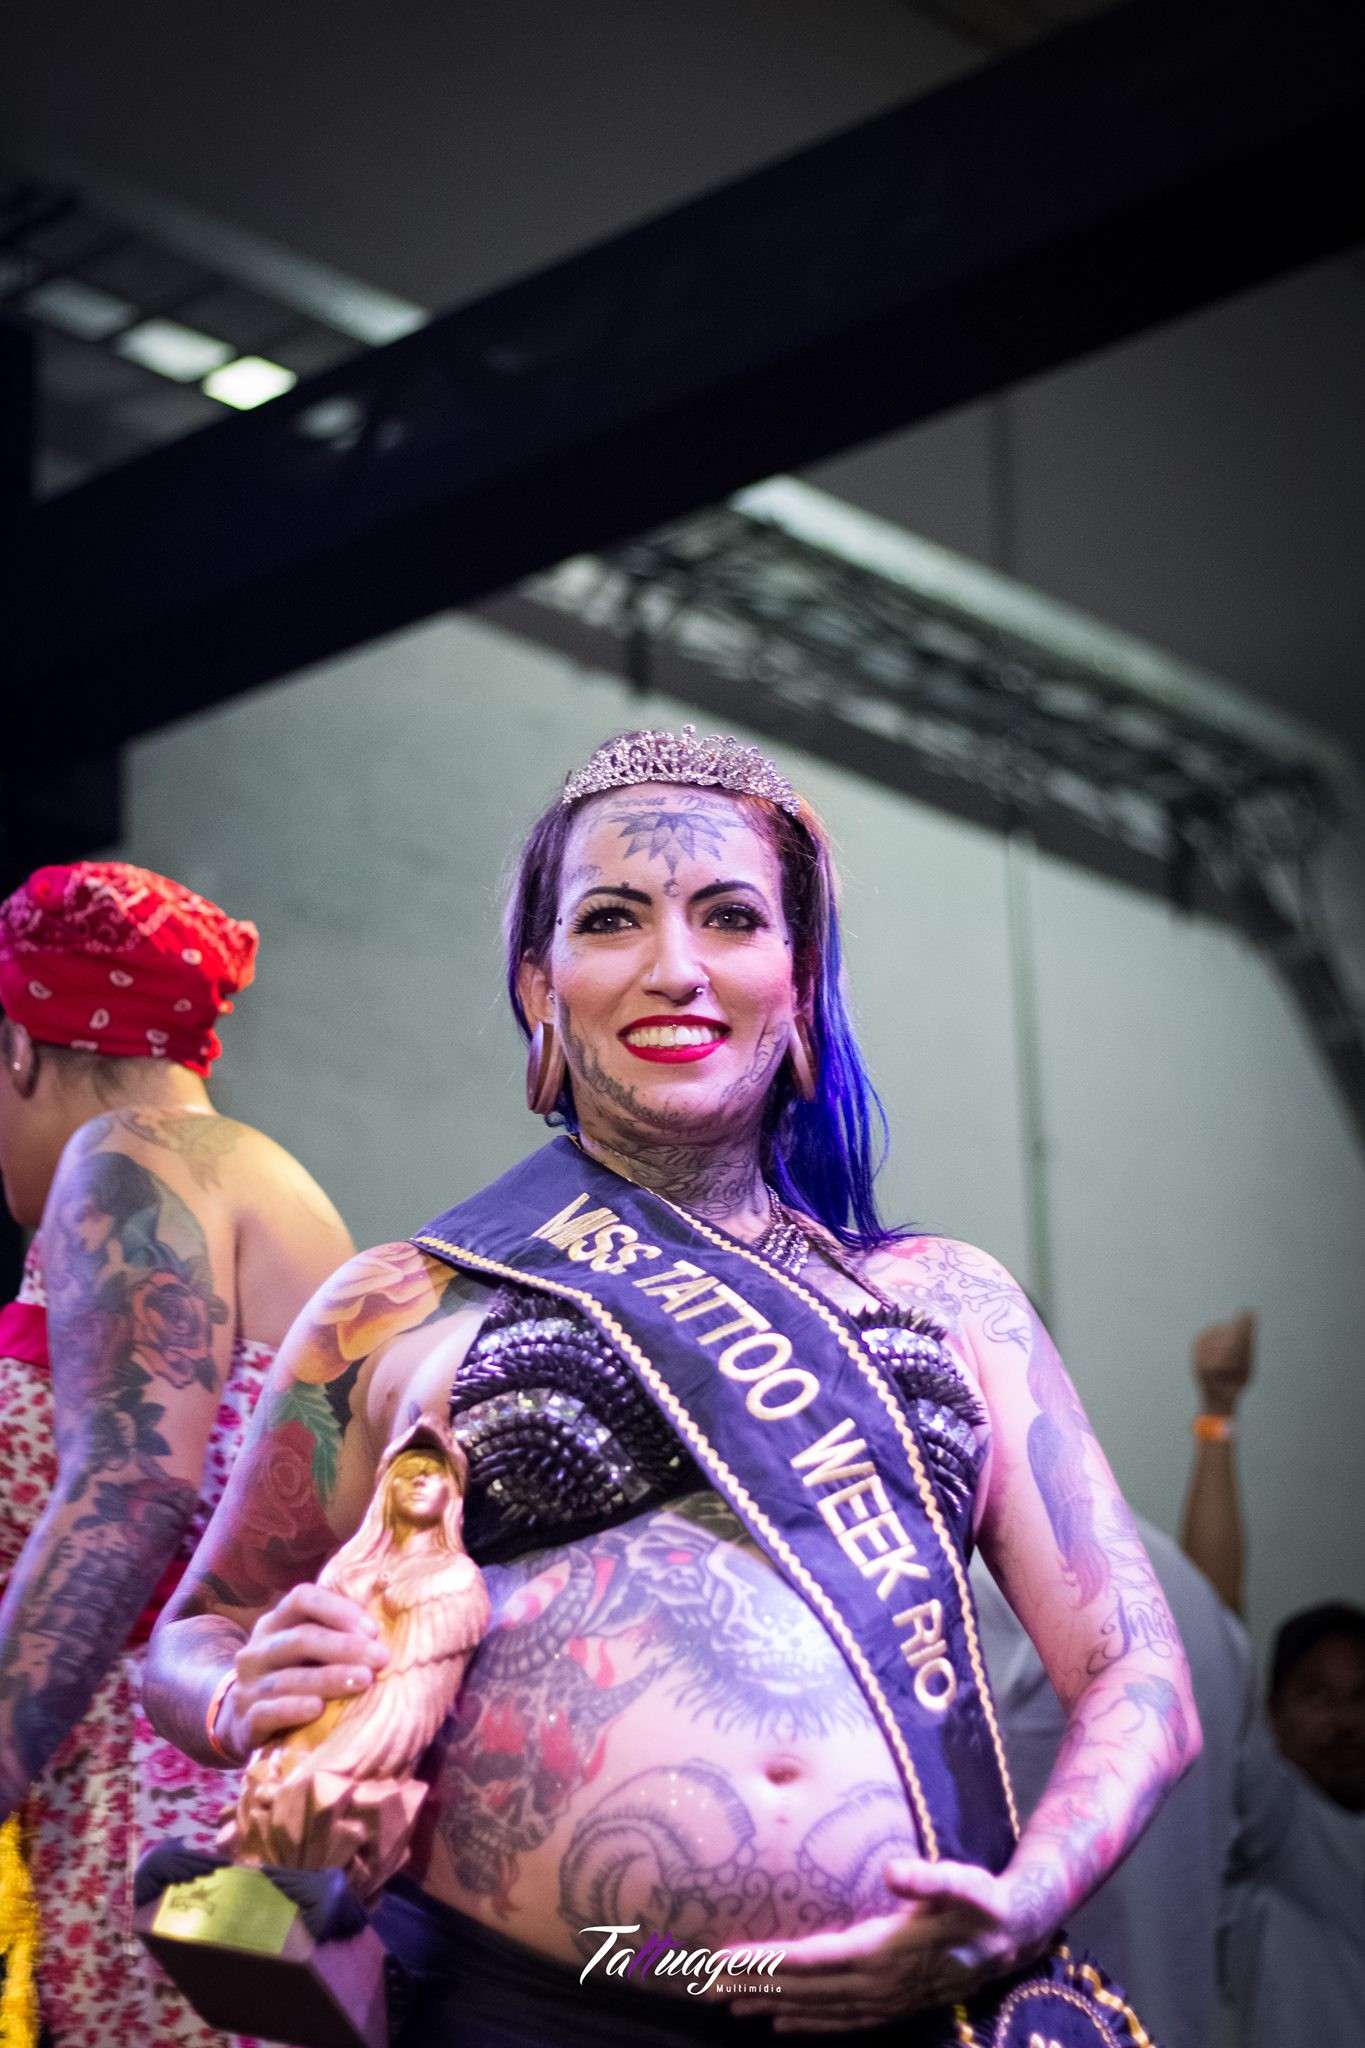 Camila D'Aiuto, a Miss Tattoo Week Rio 2017